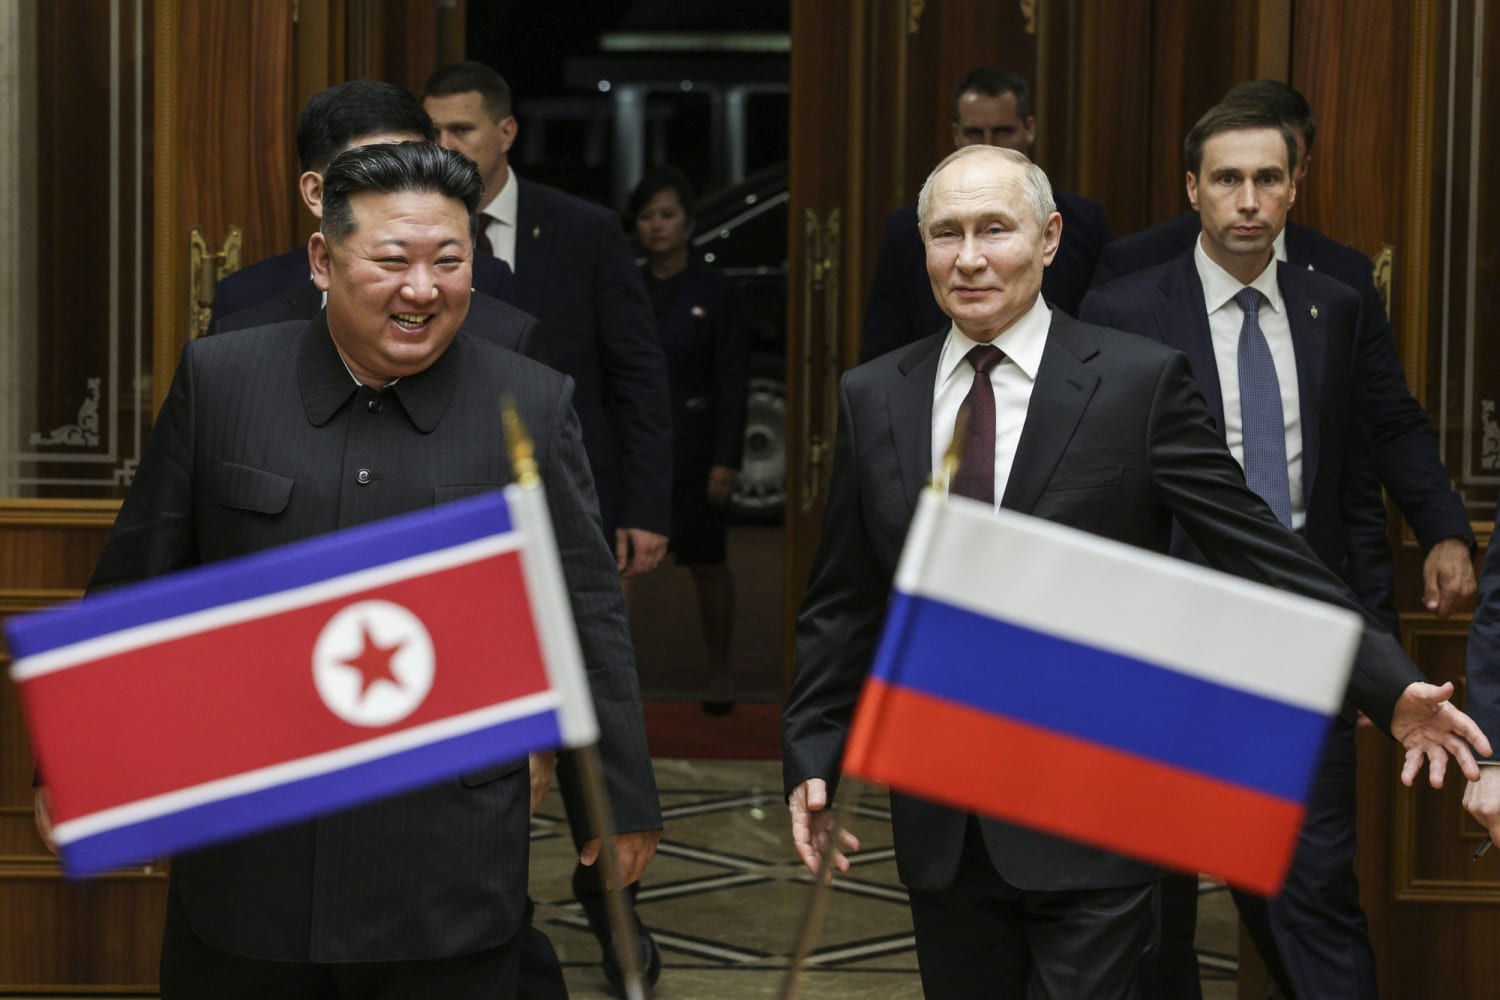 Putin says ‘appreciates the support’ of N. Korea: Russian agencies